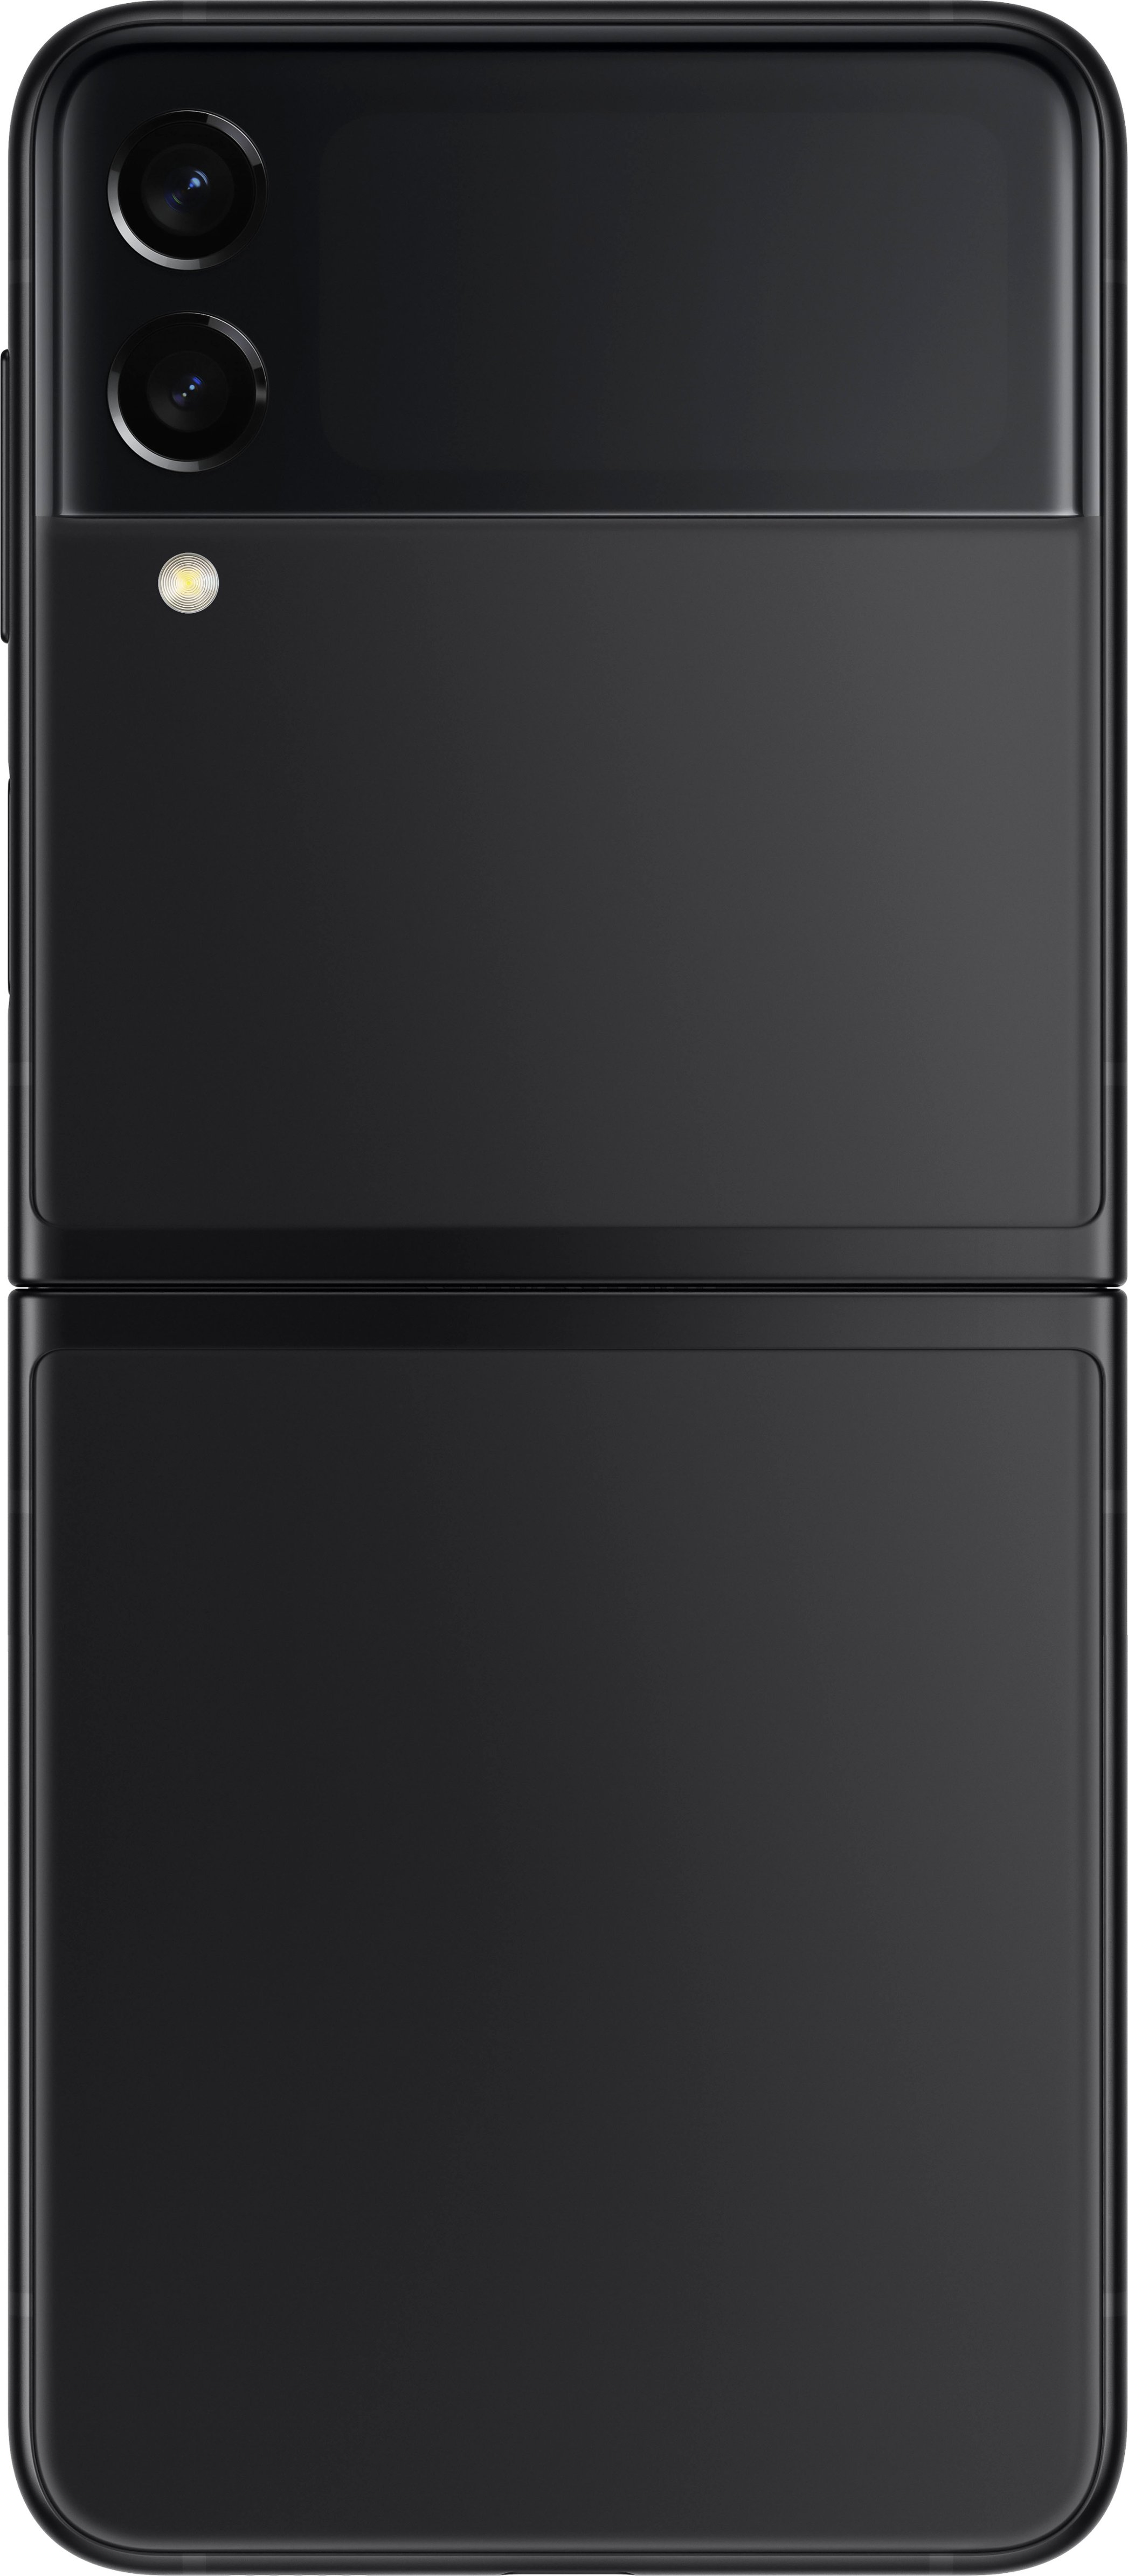 Samsung Galaxy Z Flip3 5G 128GB Phantom Black (Verizon) SM 